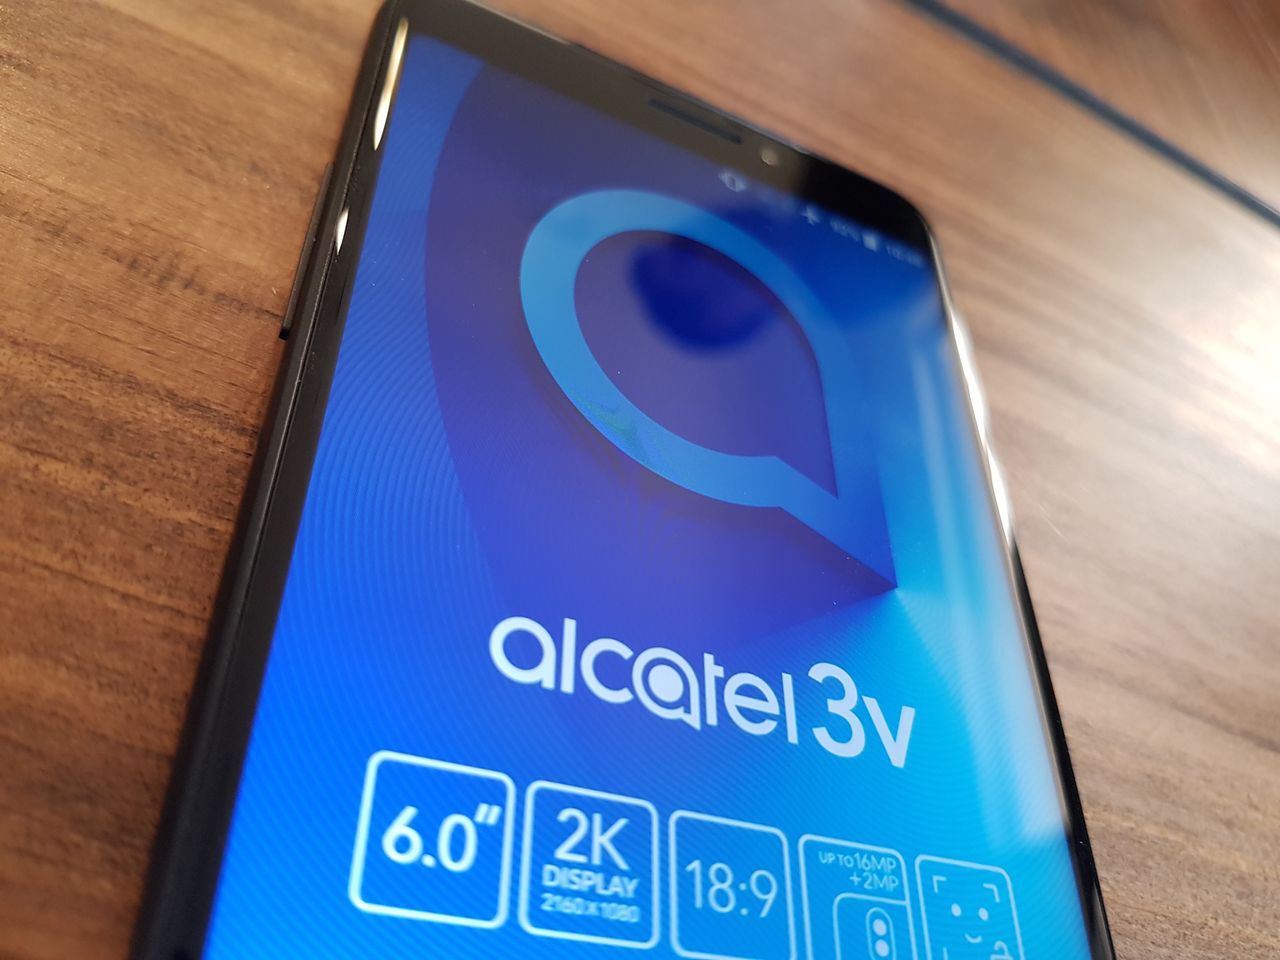 Alcatel 3V, doble cámara y gran pantalla a precio asequible 4